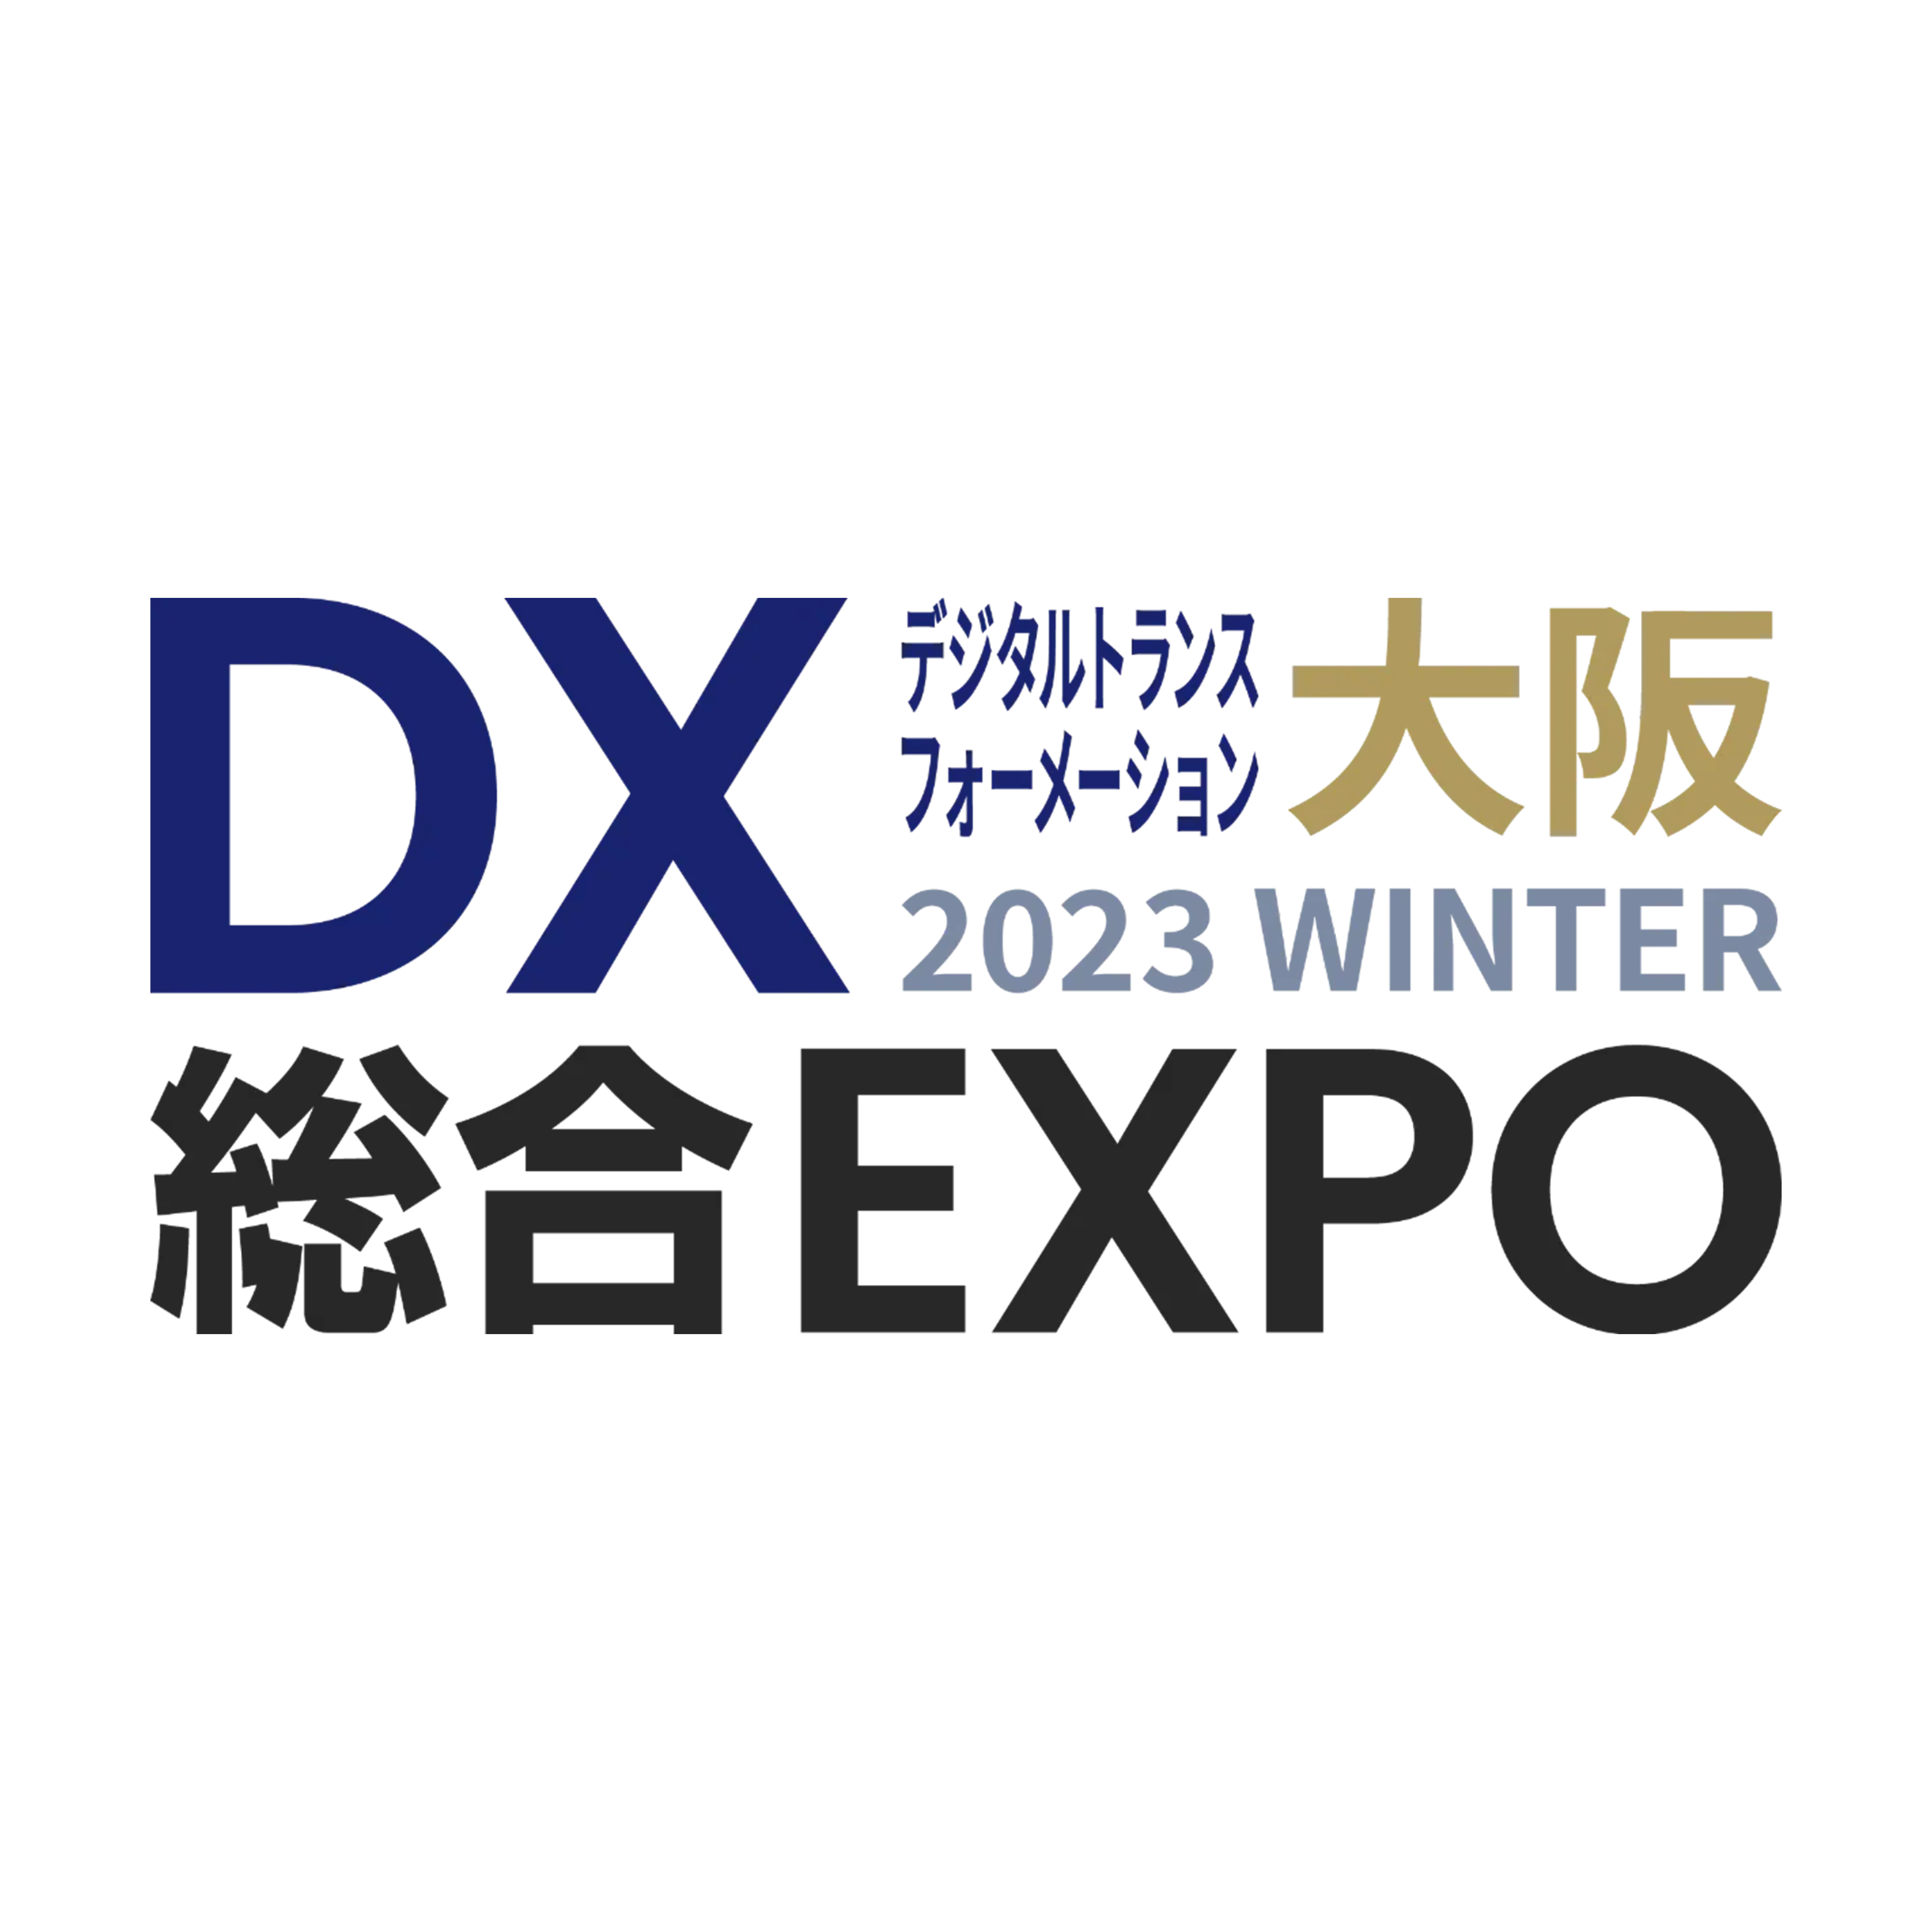 DX 総合EXPO 2023 冬 大阪 出展のお知らせ